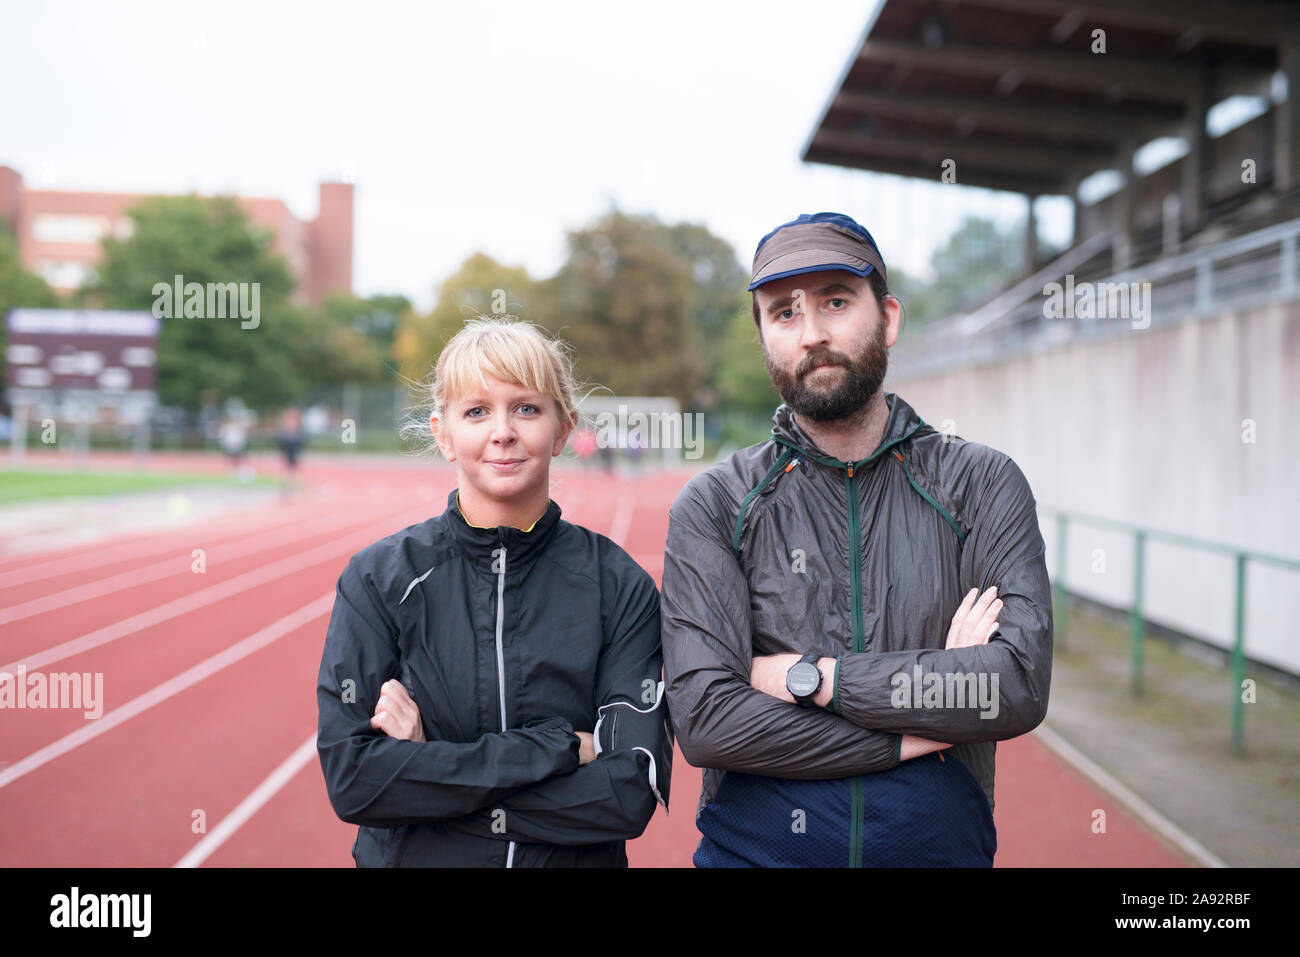 El hombre y la mujer en la pista de atletismo Foto de stock